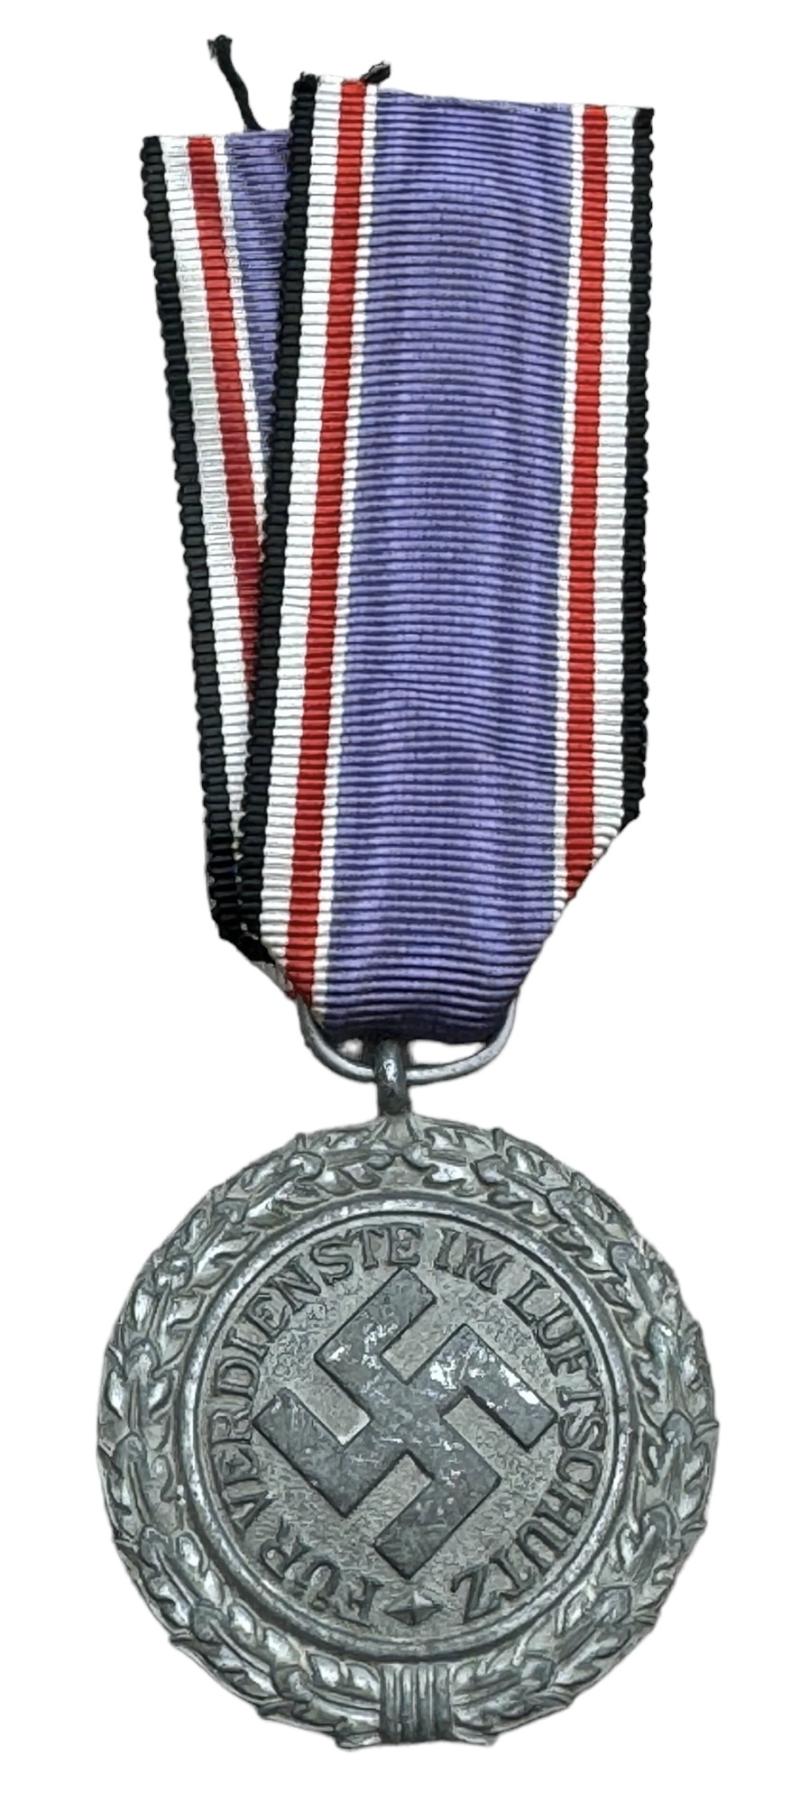 Luftschutz Medal